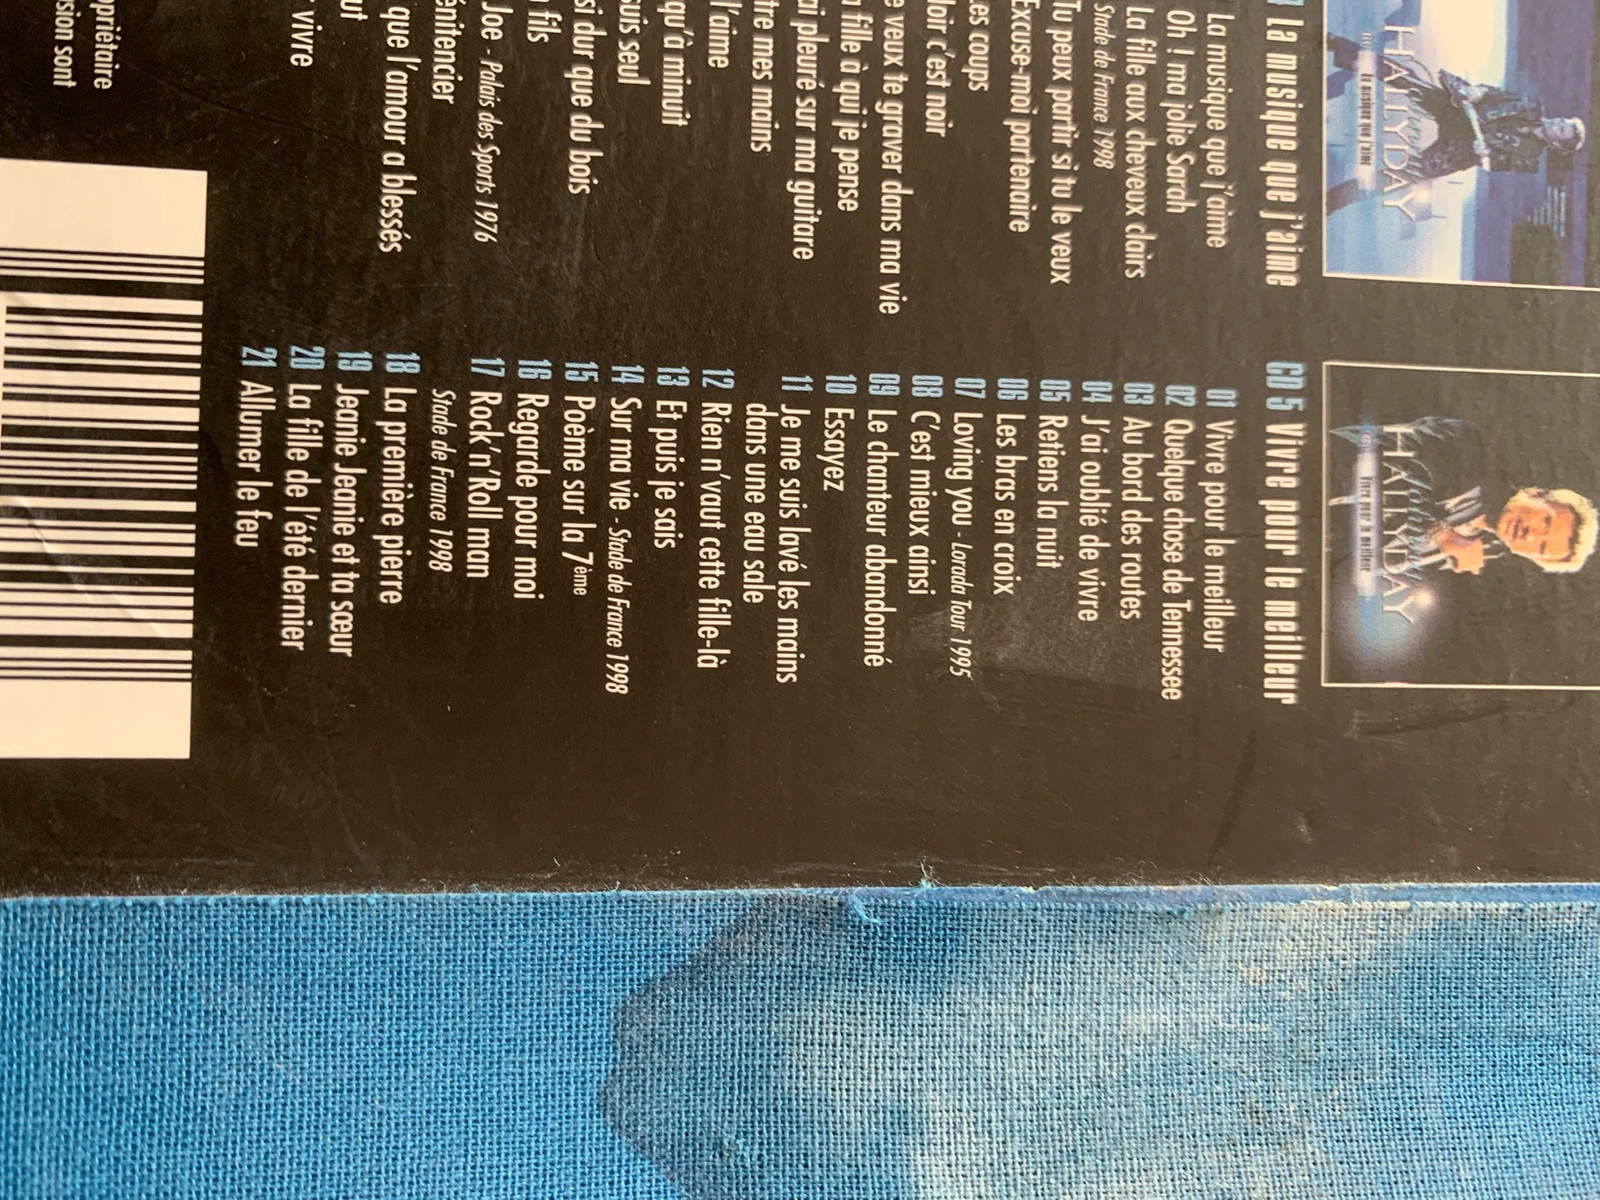 5 CD de Johnny Hallyday, les 100 plus belles chansons !